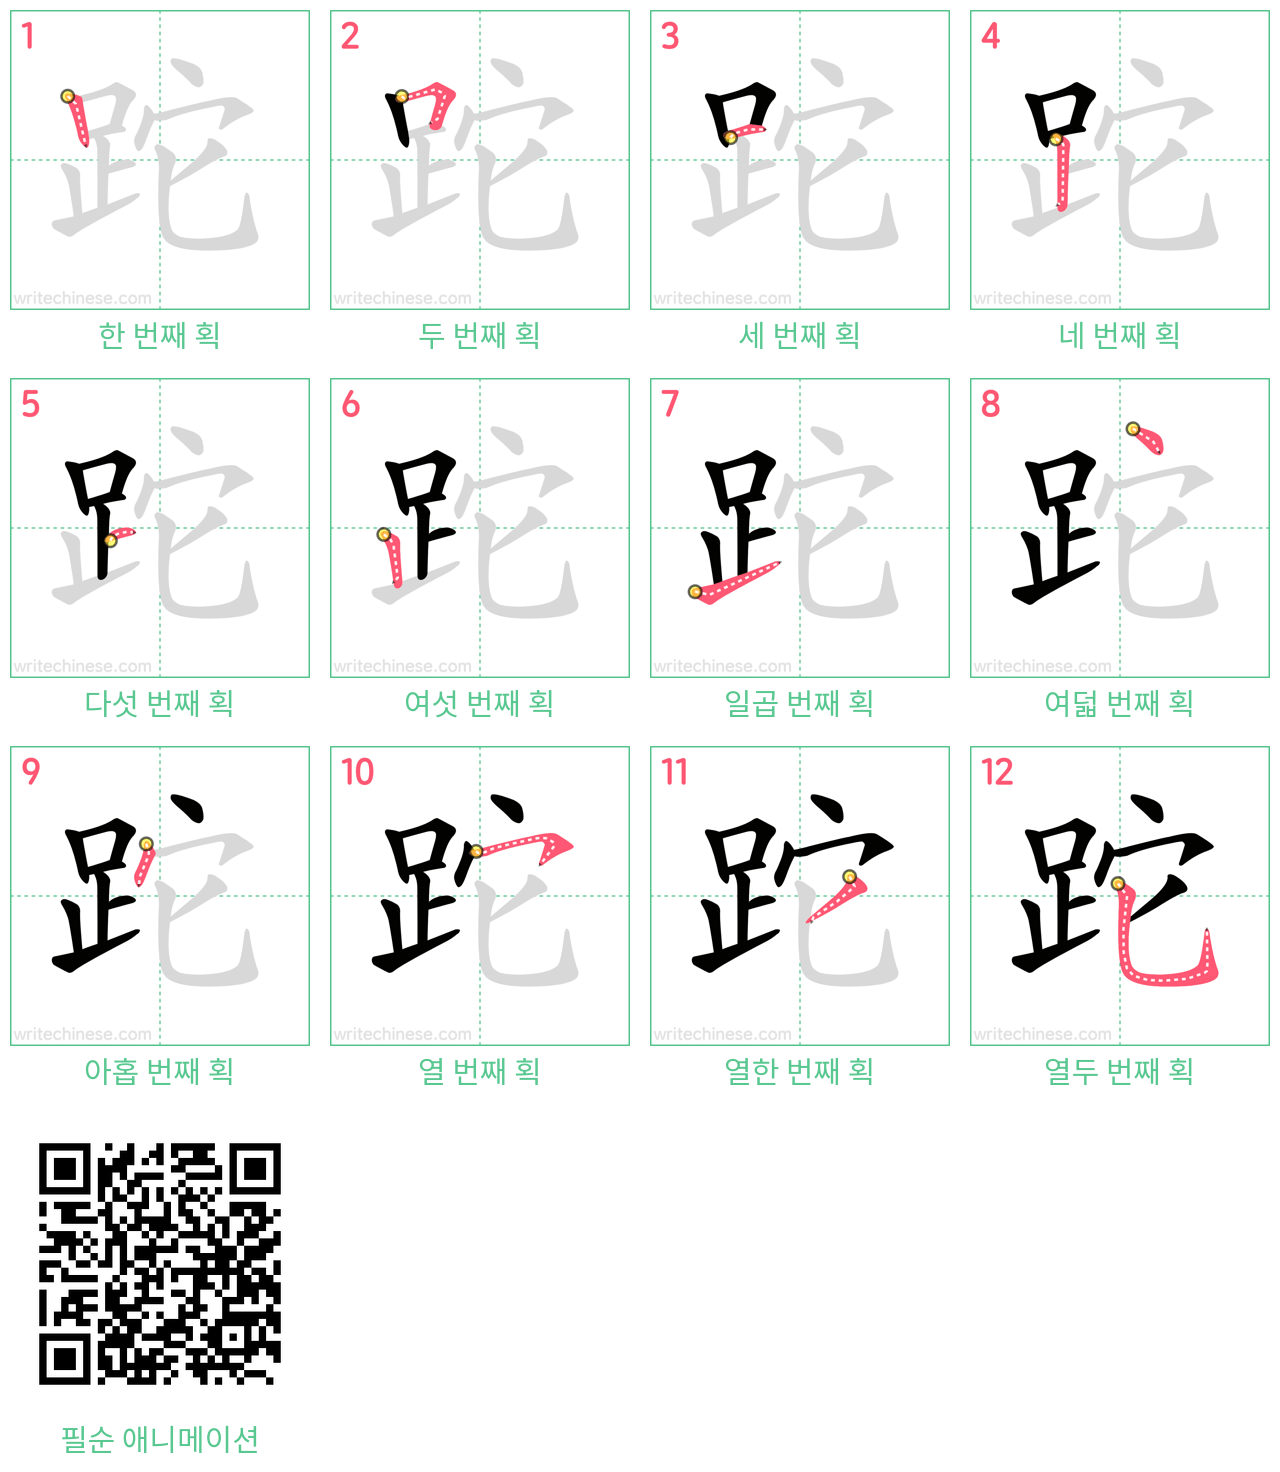 跎 step-by-step stroke order diagrams